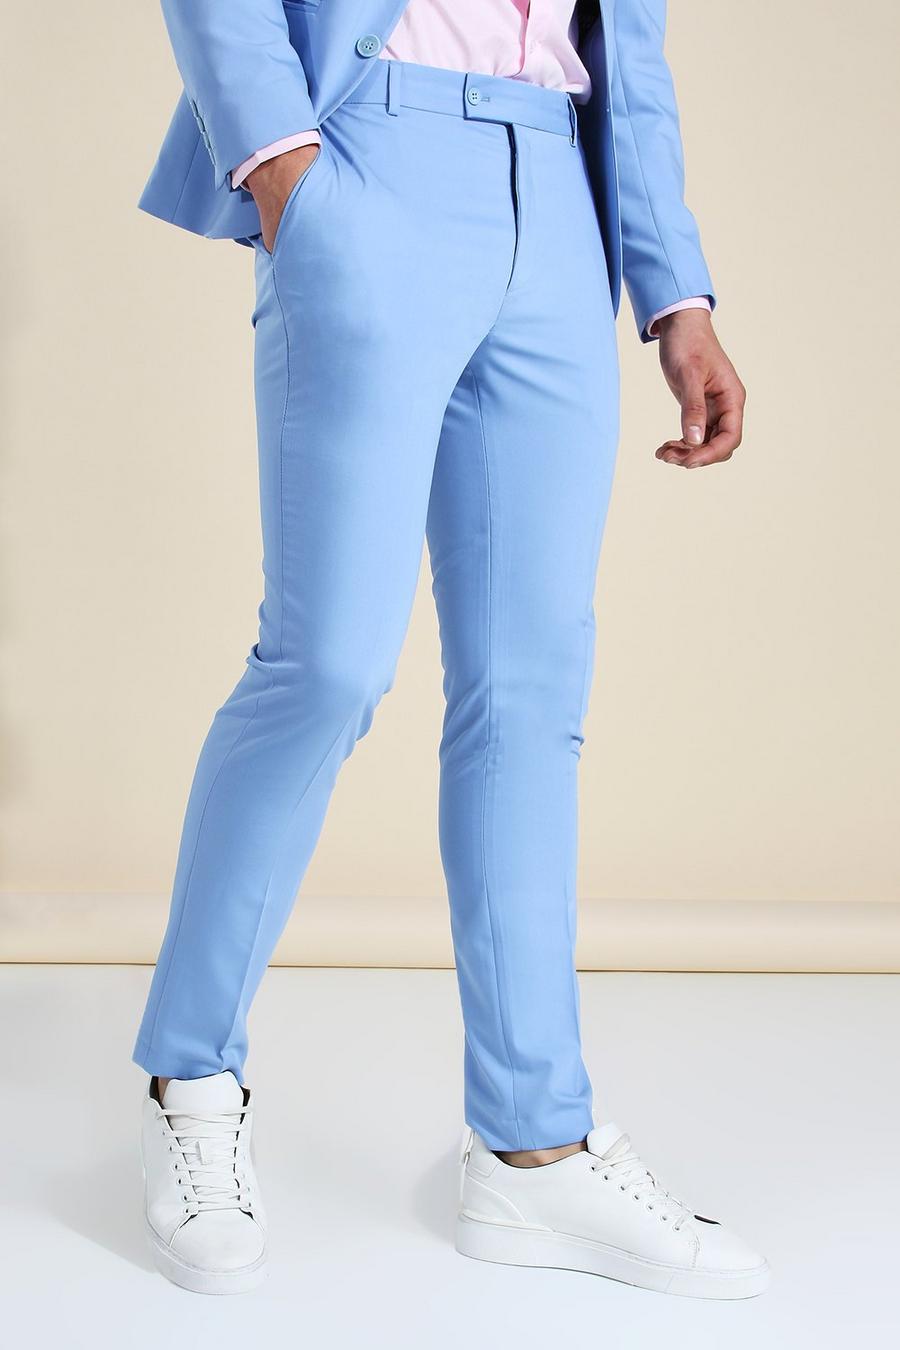 Sky blue pant suit